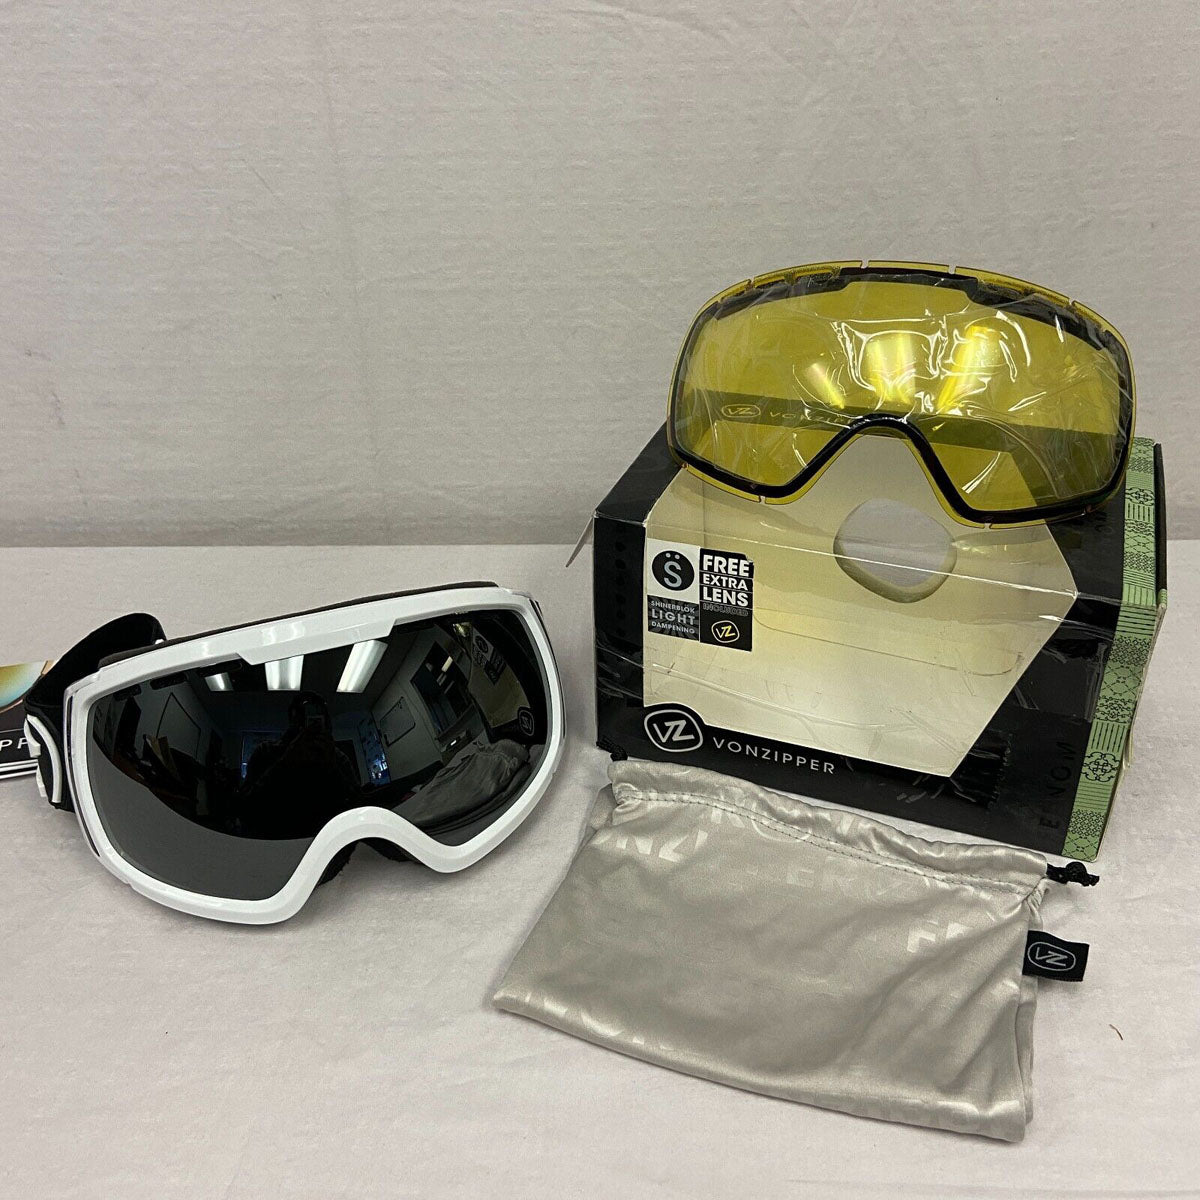 VonZipper Feenom Snow Goggles - White Gloss / Black Chrome + Yellow Lens (OPEN-BOX) - ExtremeSupply.com